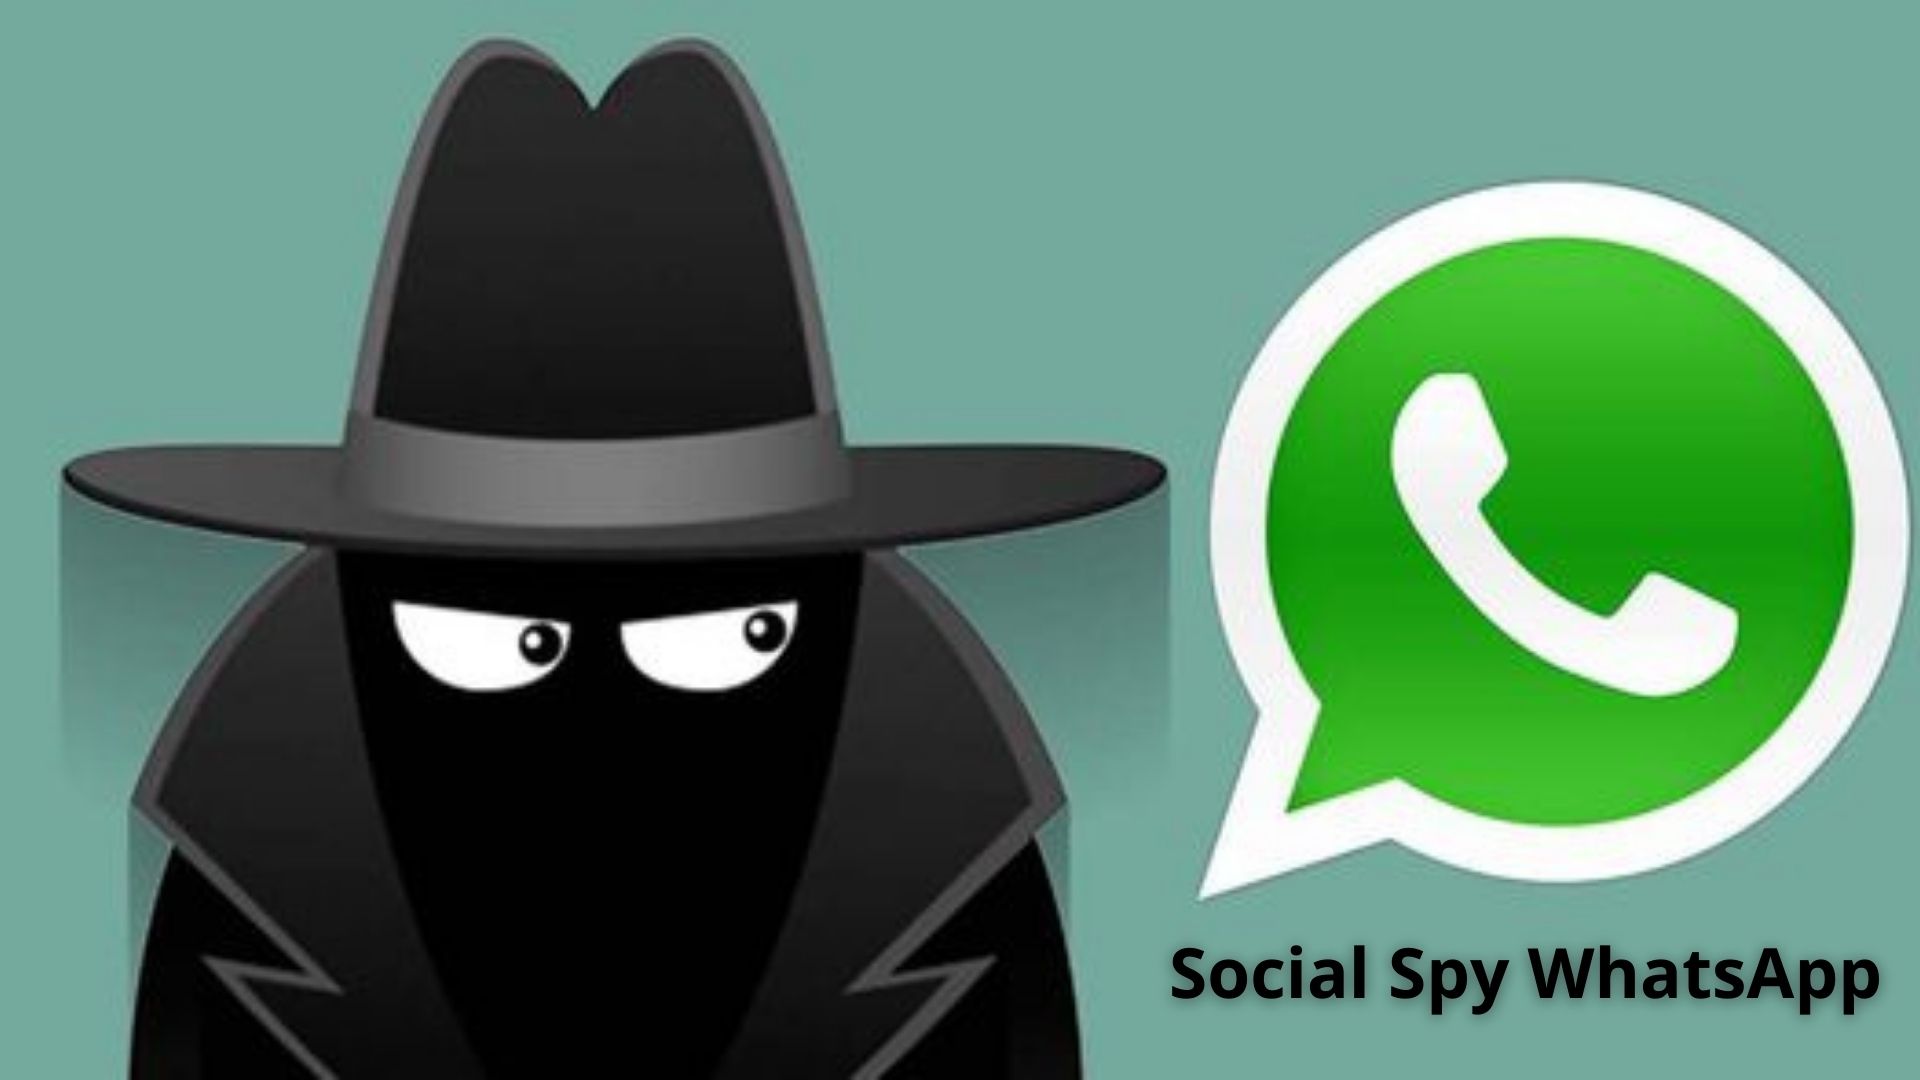 Cara Menyadap Isi WhatsApp Orang Lain Dengan Aplikasi Social Spy WhatsApp, Cuma Butuh Nomor HP!